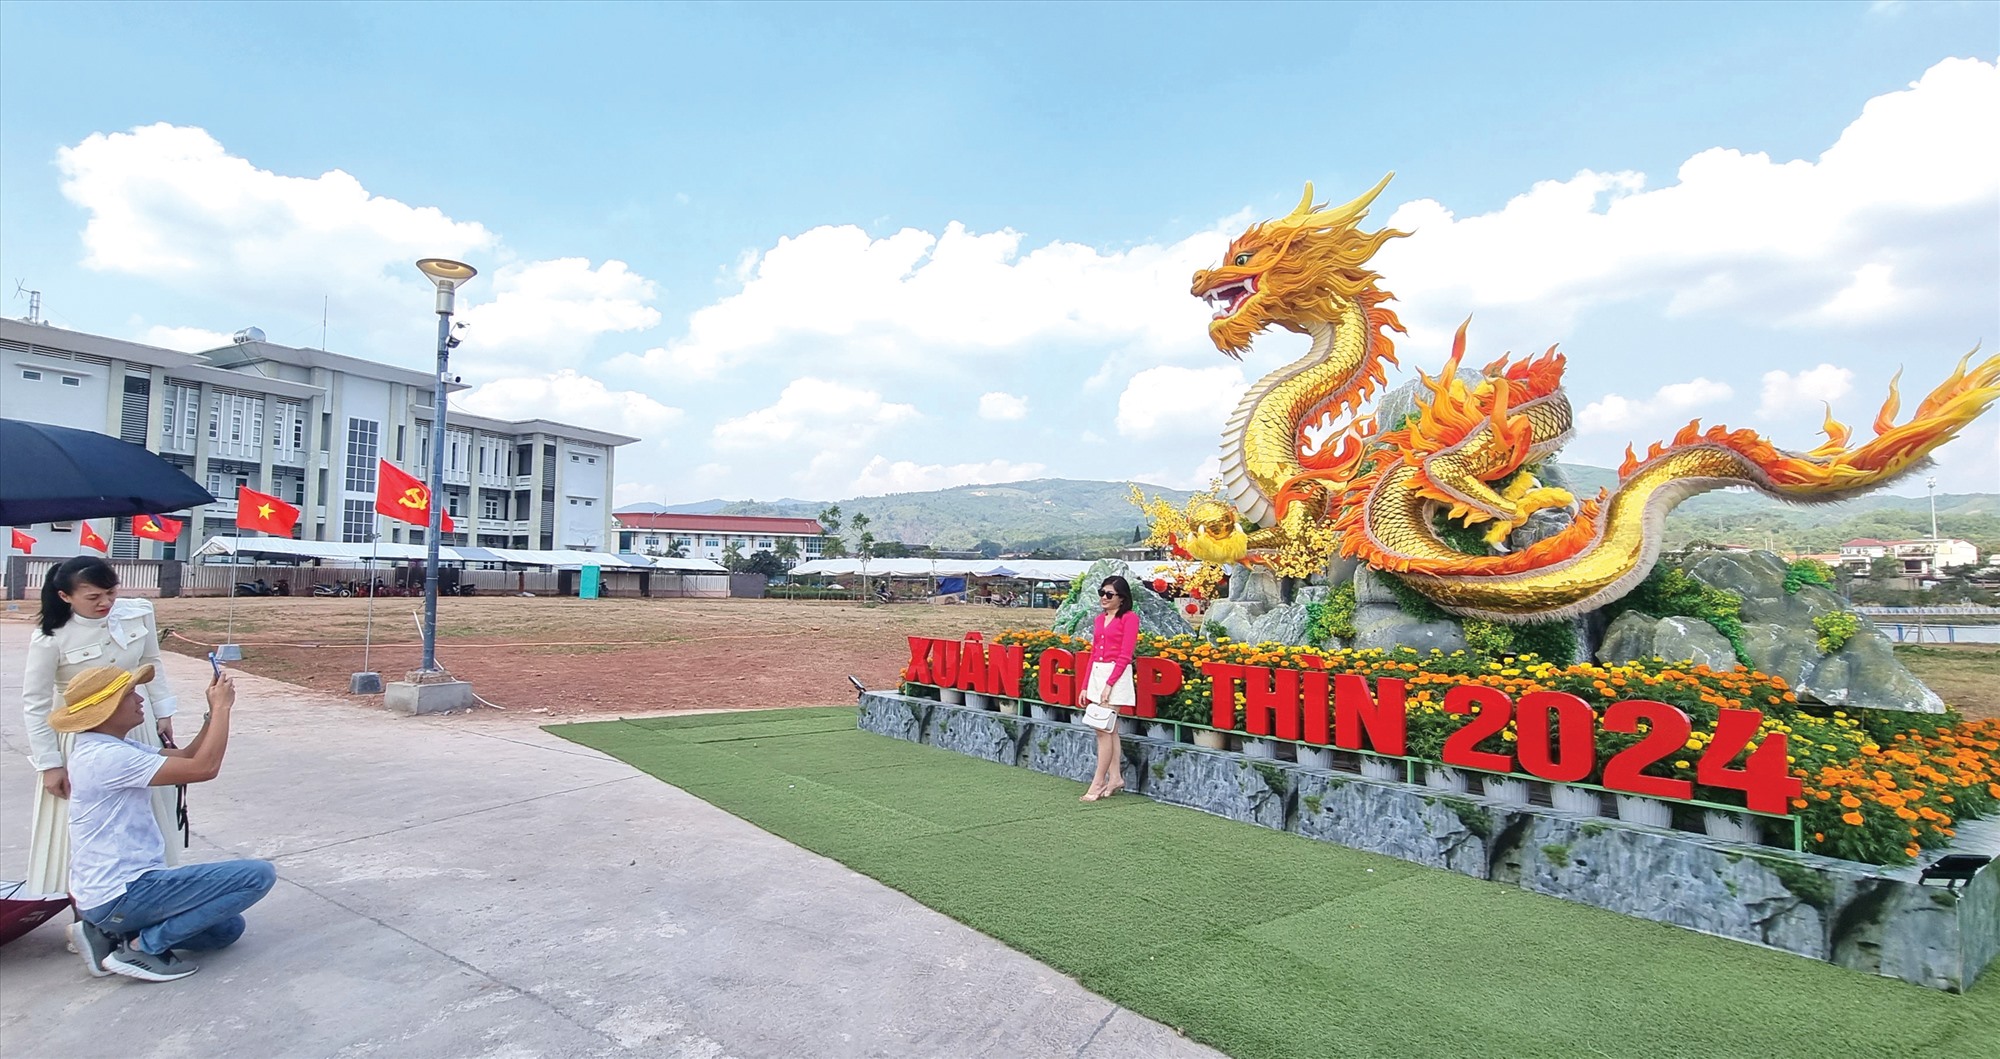 Du khách đến chiêm ngưỡng, chụp hình với linh vật rồng ở thị trấn Lao Bảo - Ảnh: K.S